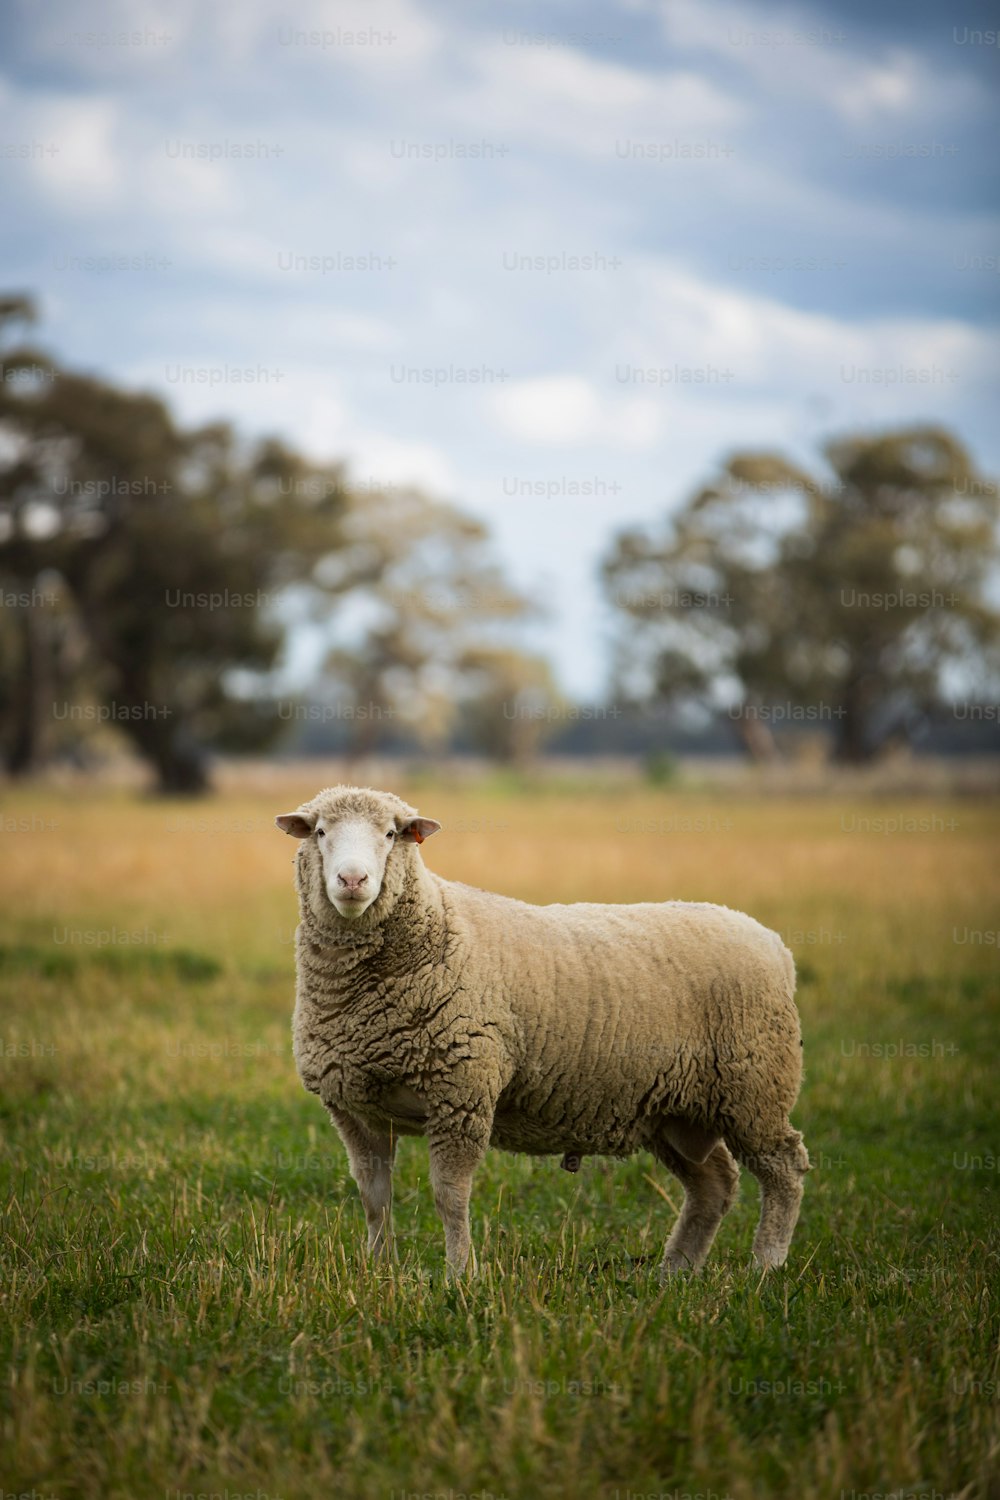 Más de 500 imágenes de ovejas | Descargar imágenes gratis en Unsplash